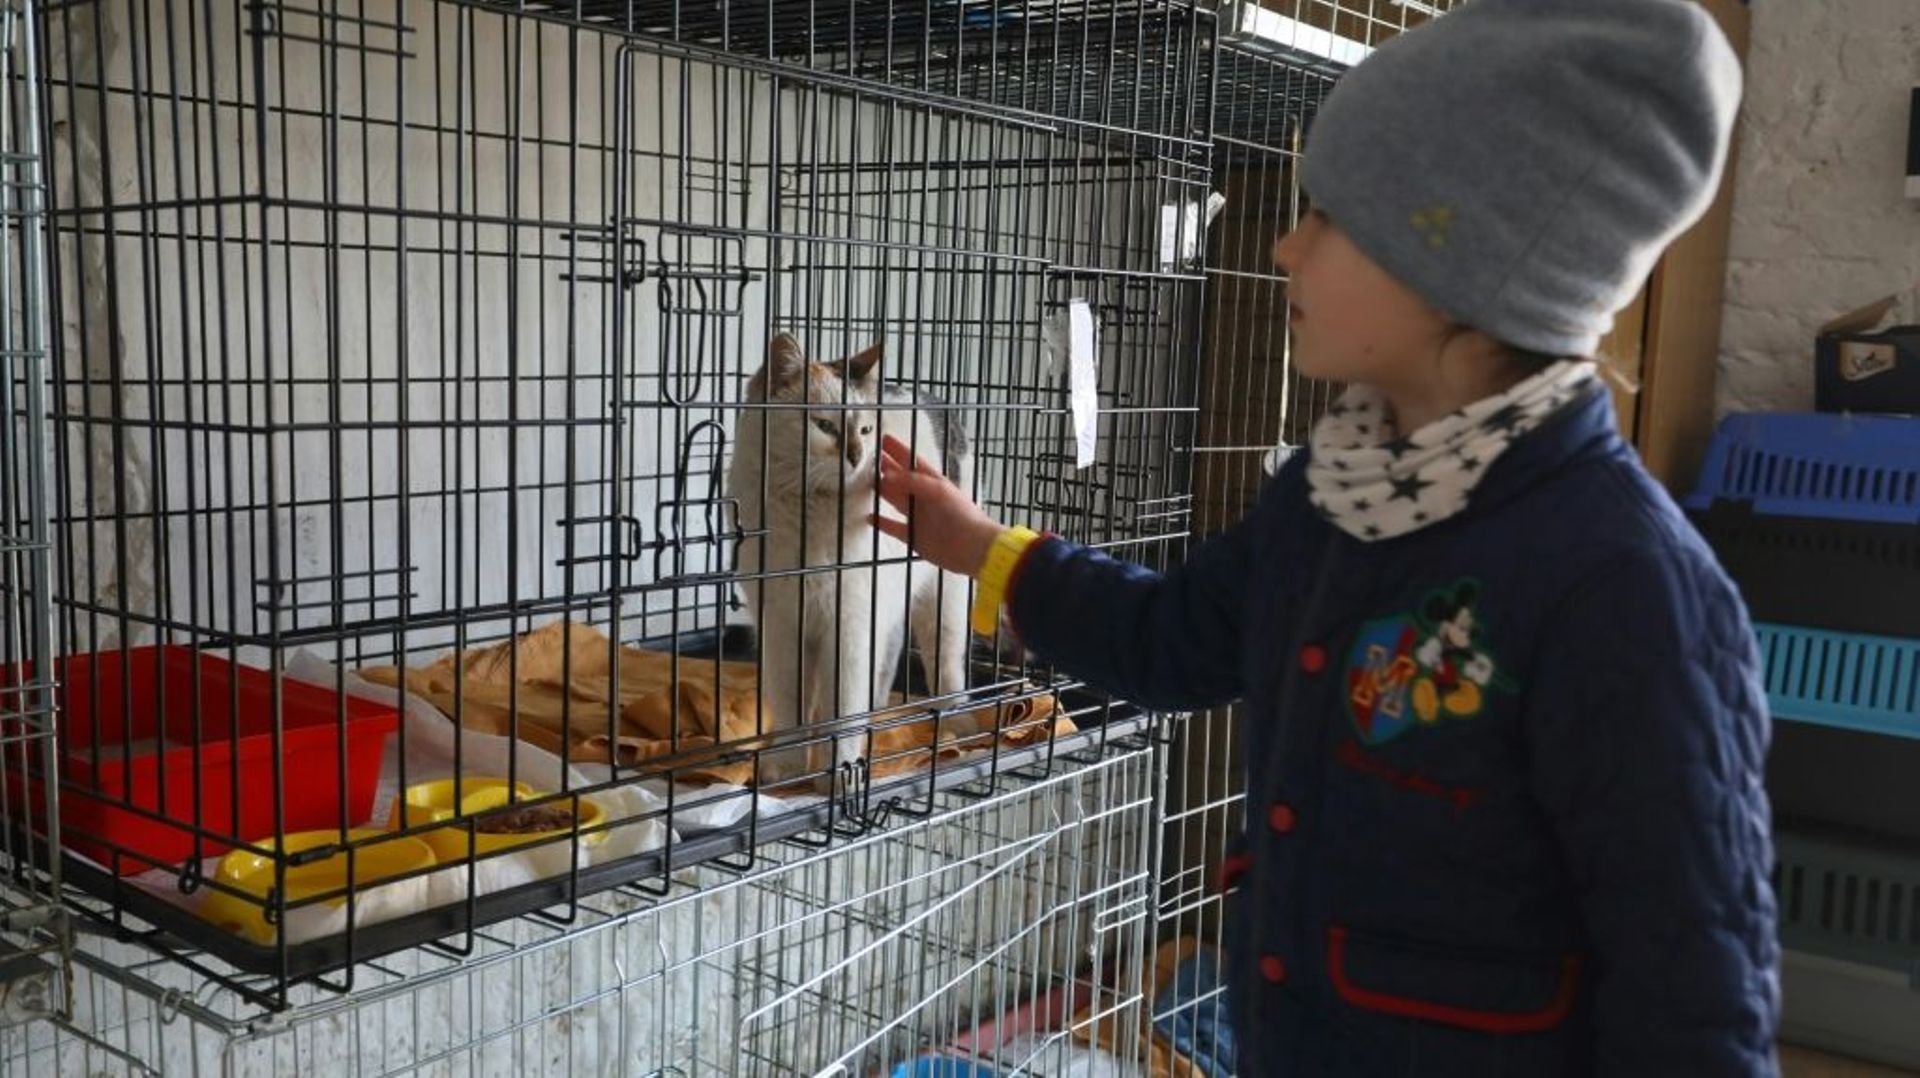 Une enfant caresse un chat dans un refuge pour animaux de Lviv, le 26 mars 2022 en Ukraine